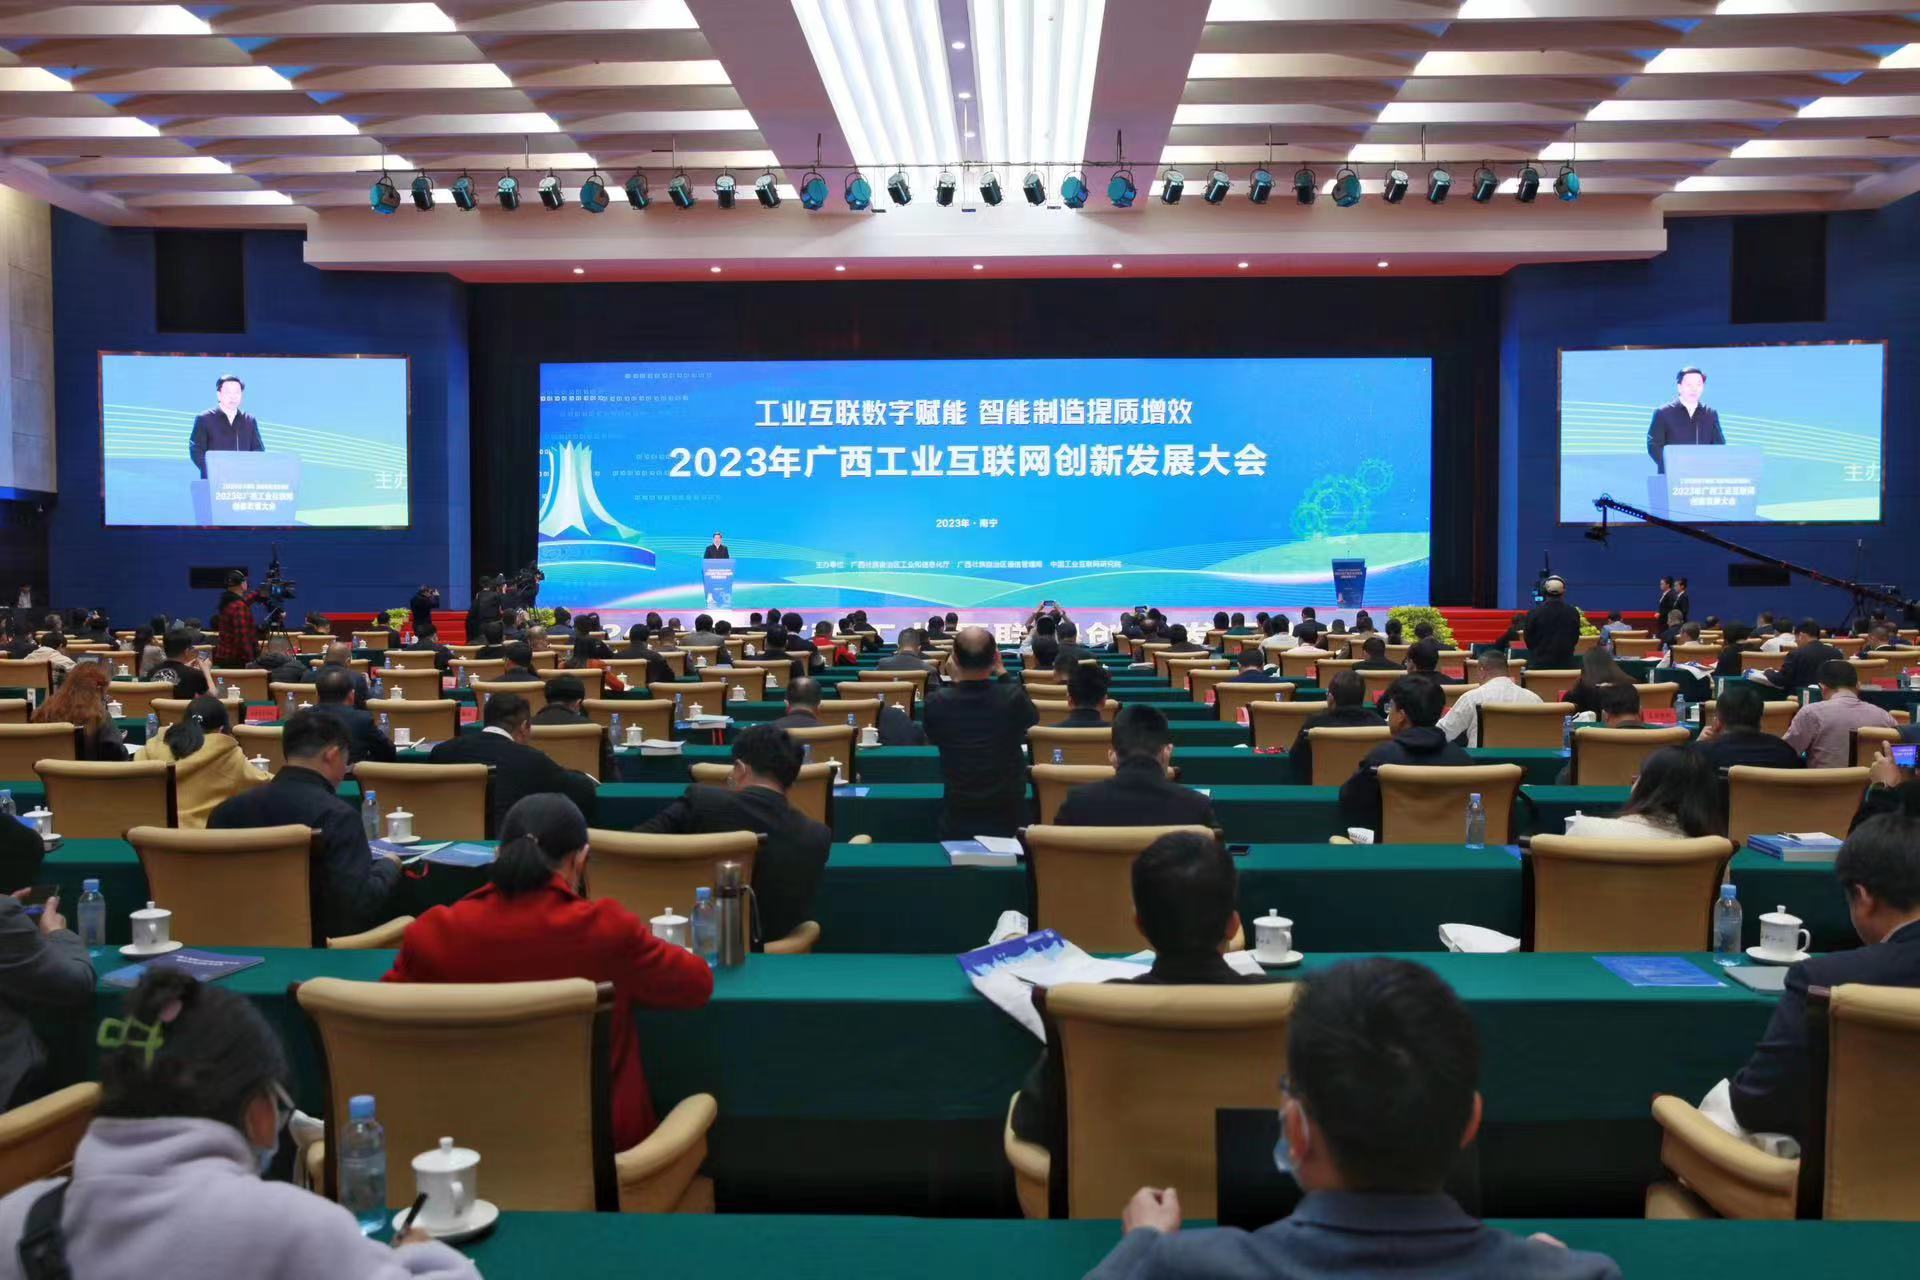 2023年廣西工業互聯網創新發展大會舉行